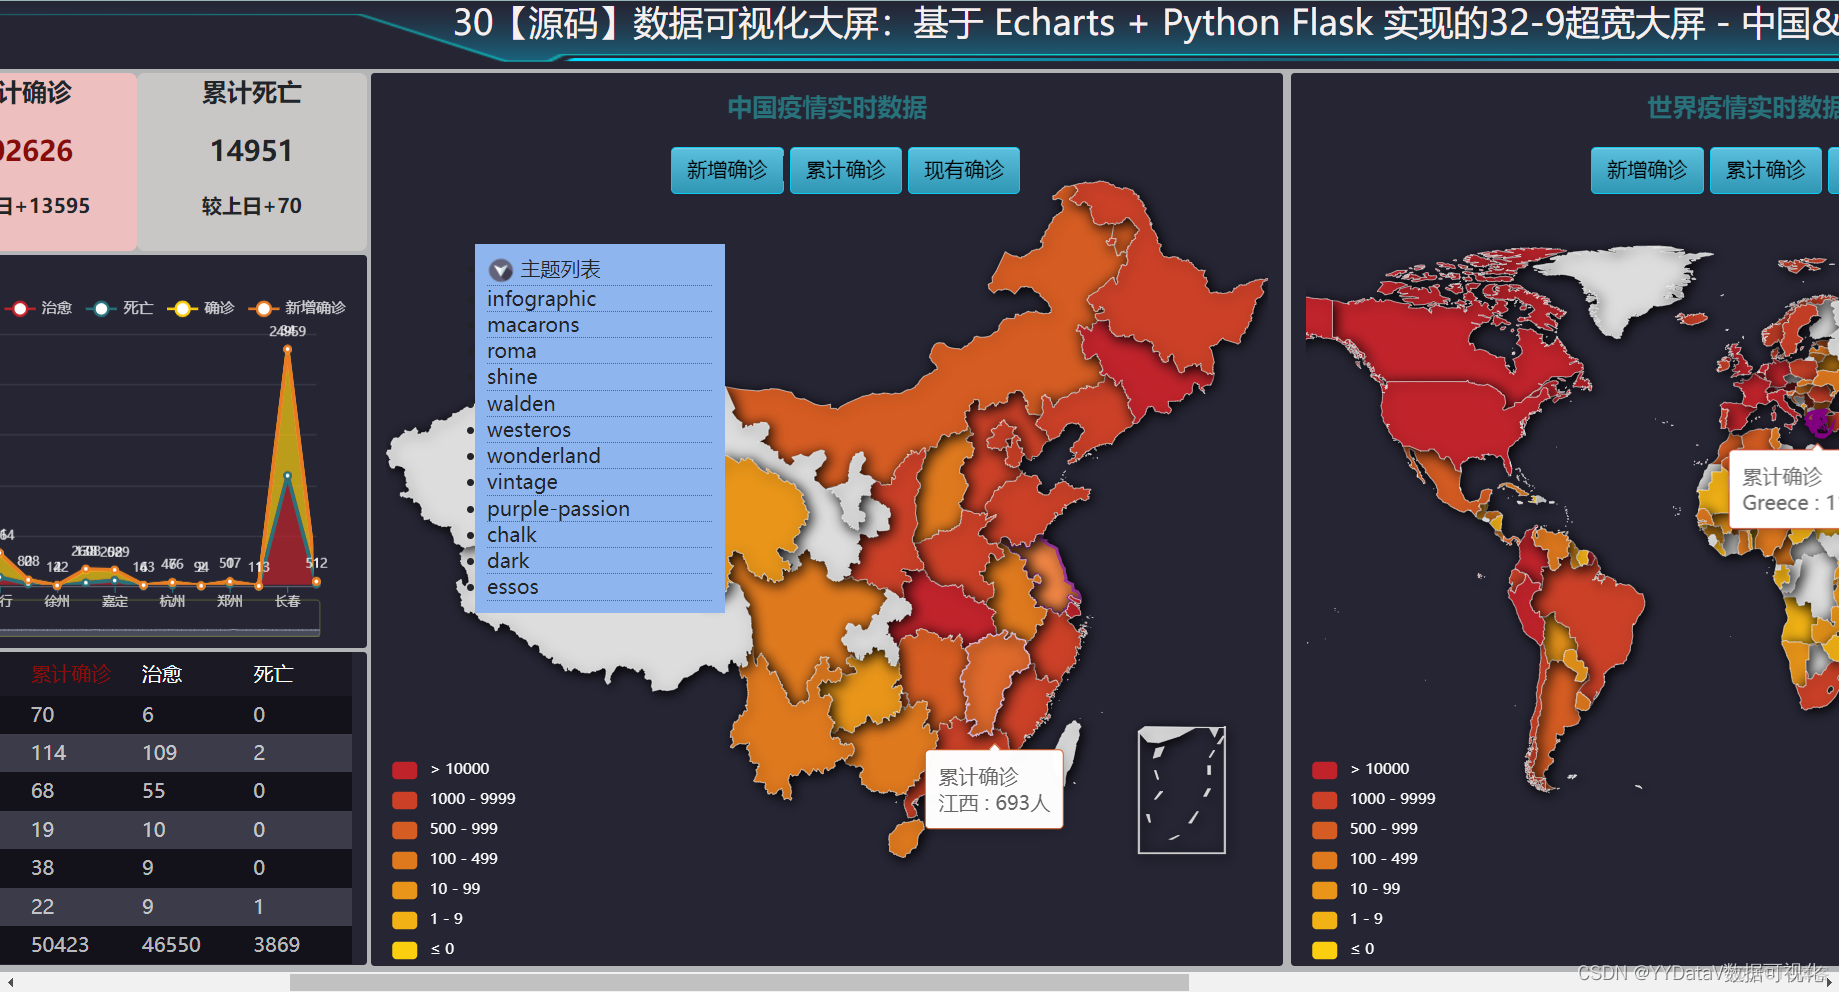 30【源码】数据可视化大屏：基于 Echarts + Python Flask 实现的32-9超宽大屏 - 中国&国际疫情实时追踪_数据可视化_02